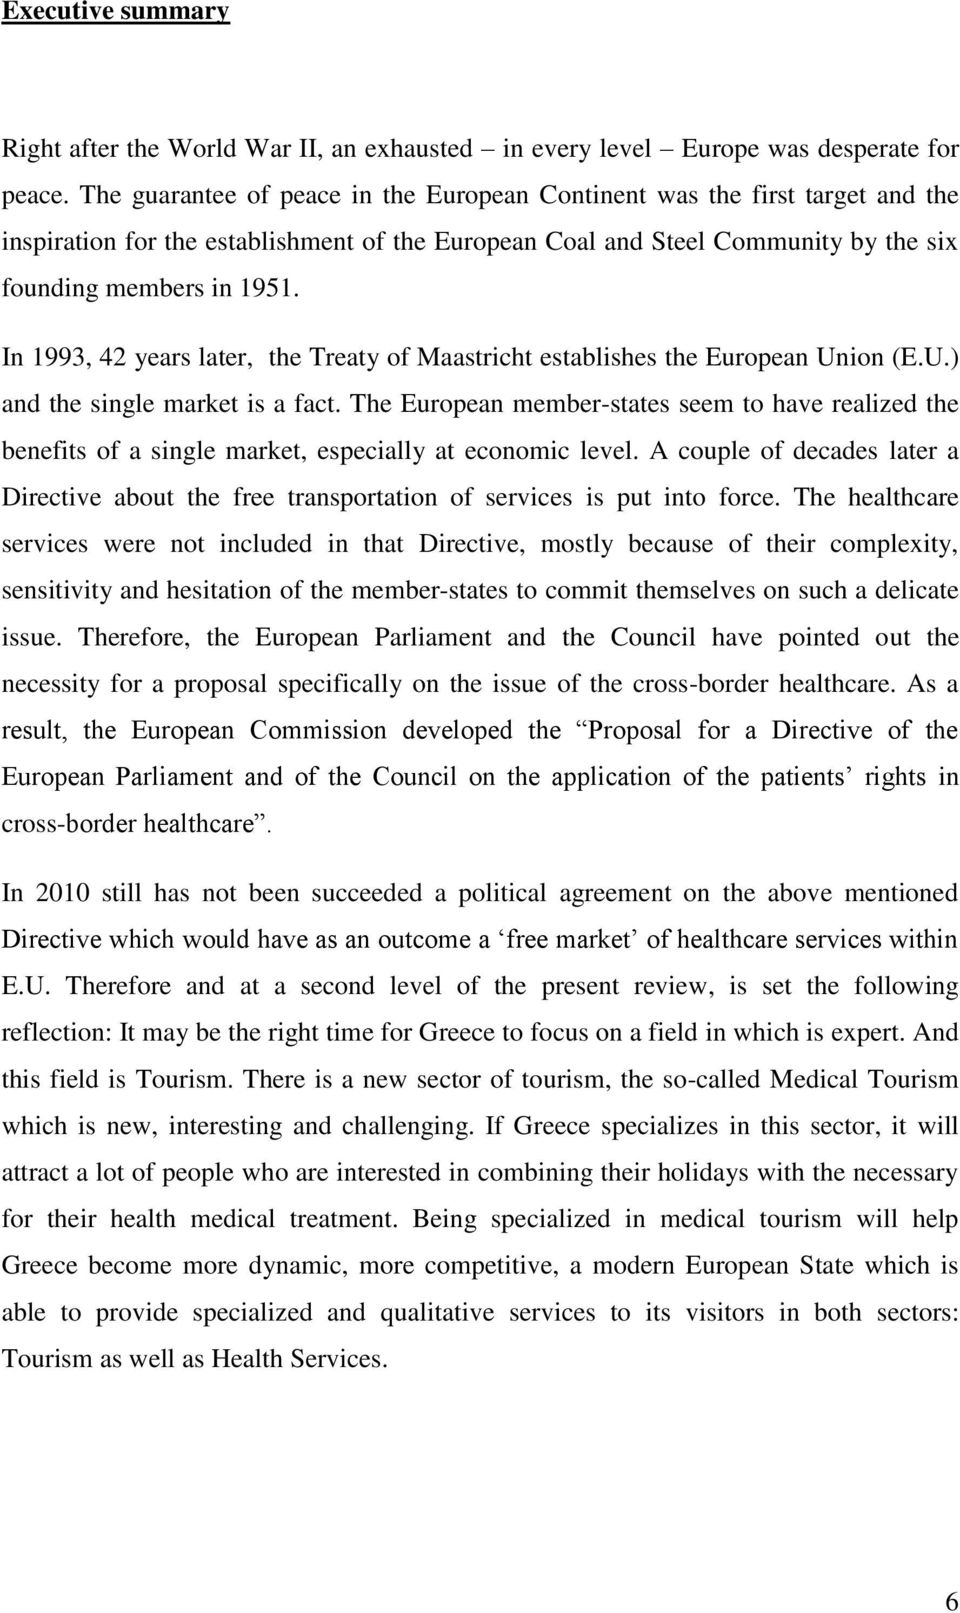 Ηn 1993, 42 years later, the Treaty of Maastricht establishes the European Union (E.U.) and the single market is a fact.